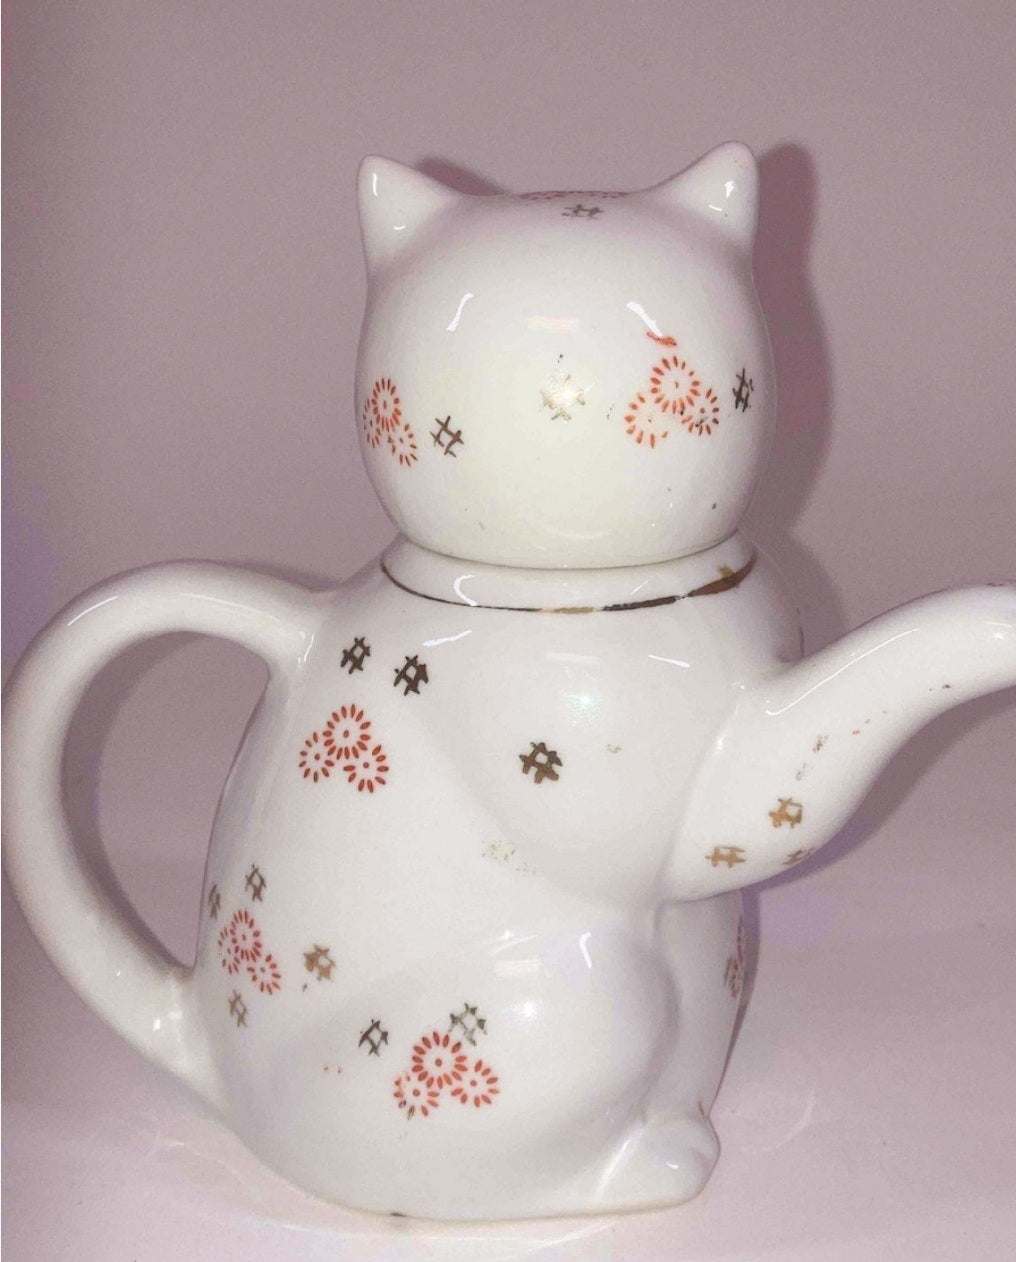 Adorable *White Ceramic 6" Kitten TeaPot Kettle